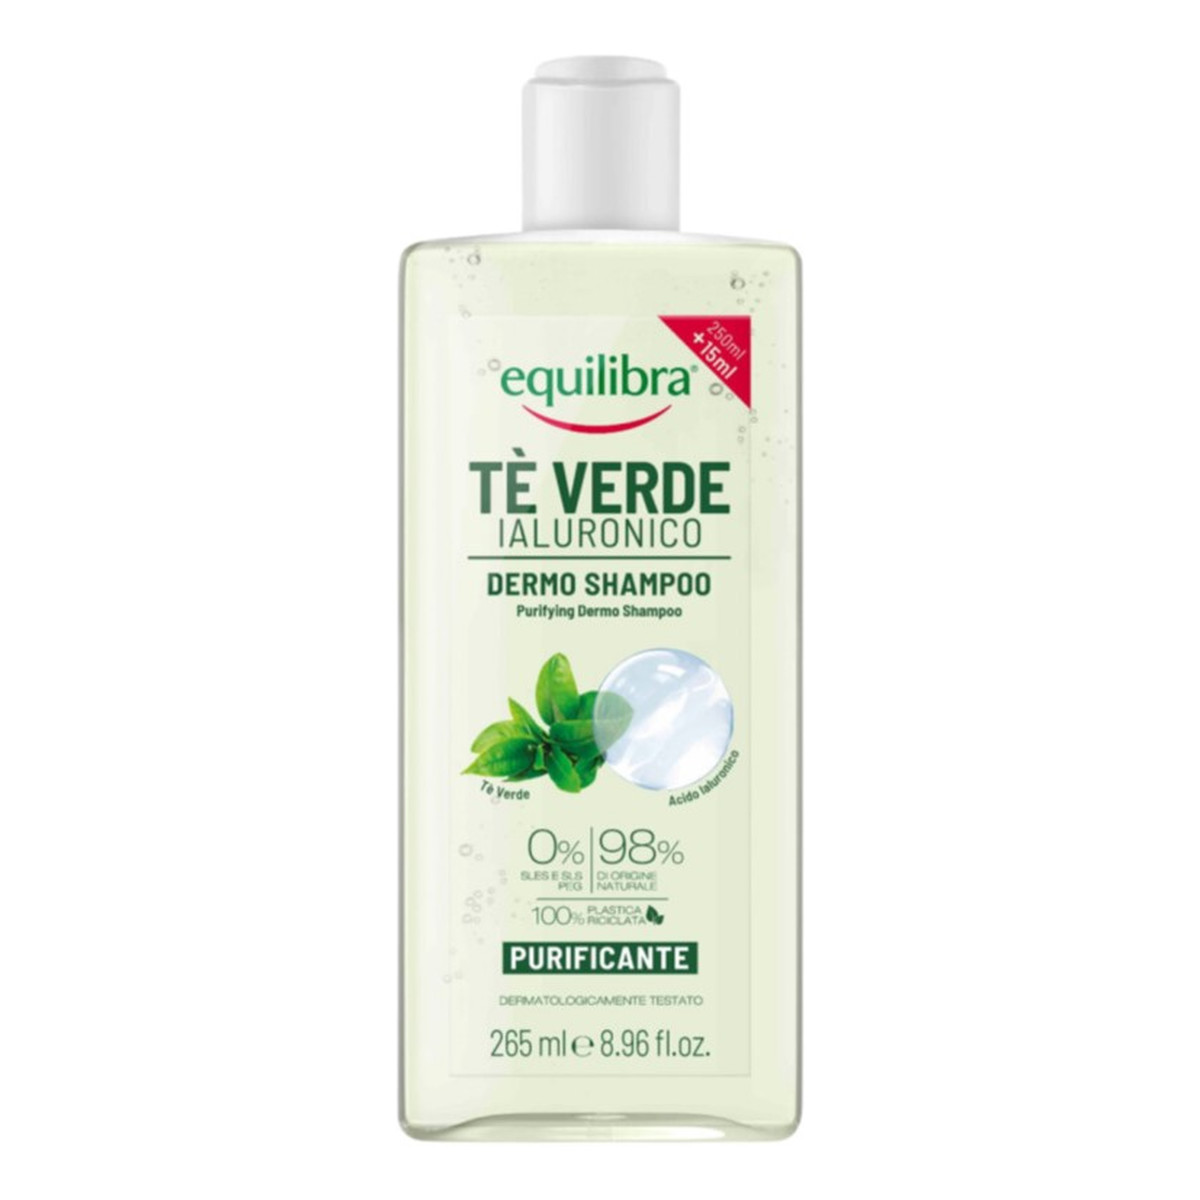 Equilibra Purifying dermo shampoo oczyszczający szampon z zieloną herbatą i kwasem hialuronowym 265ml